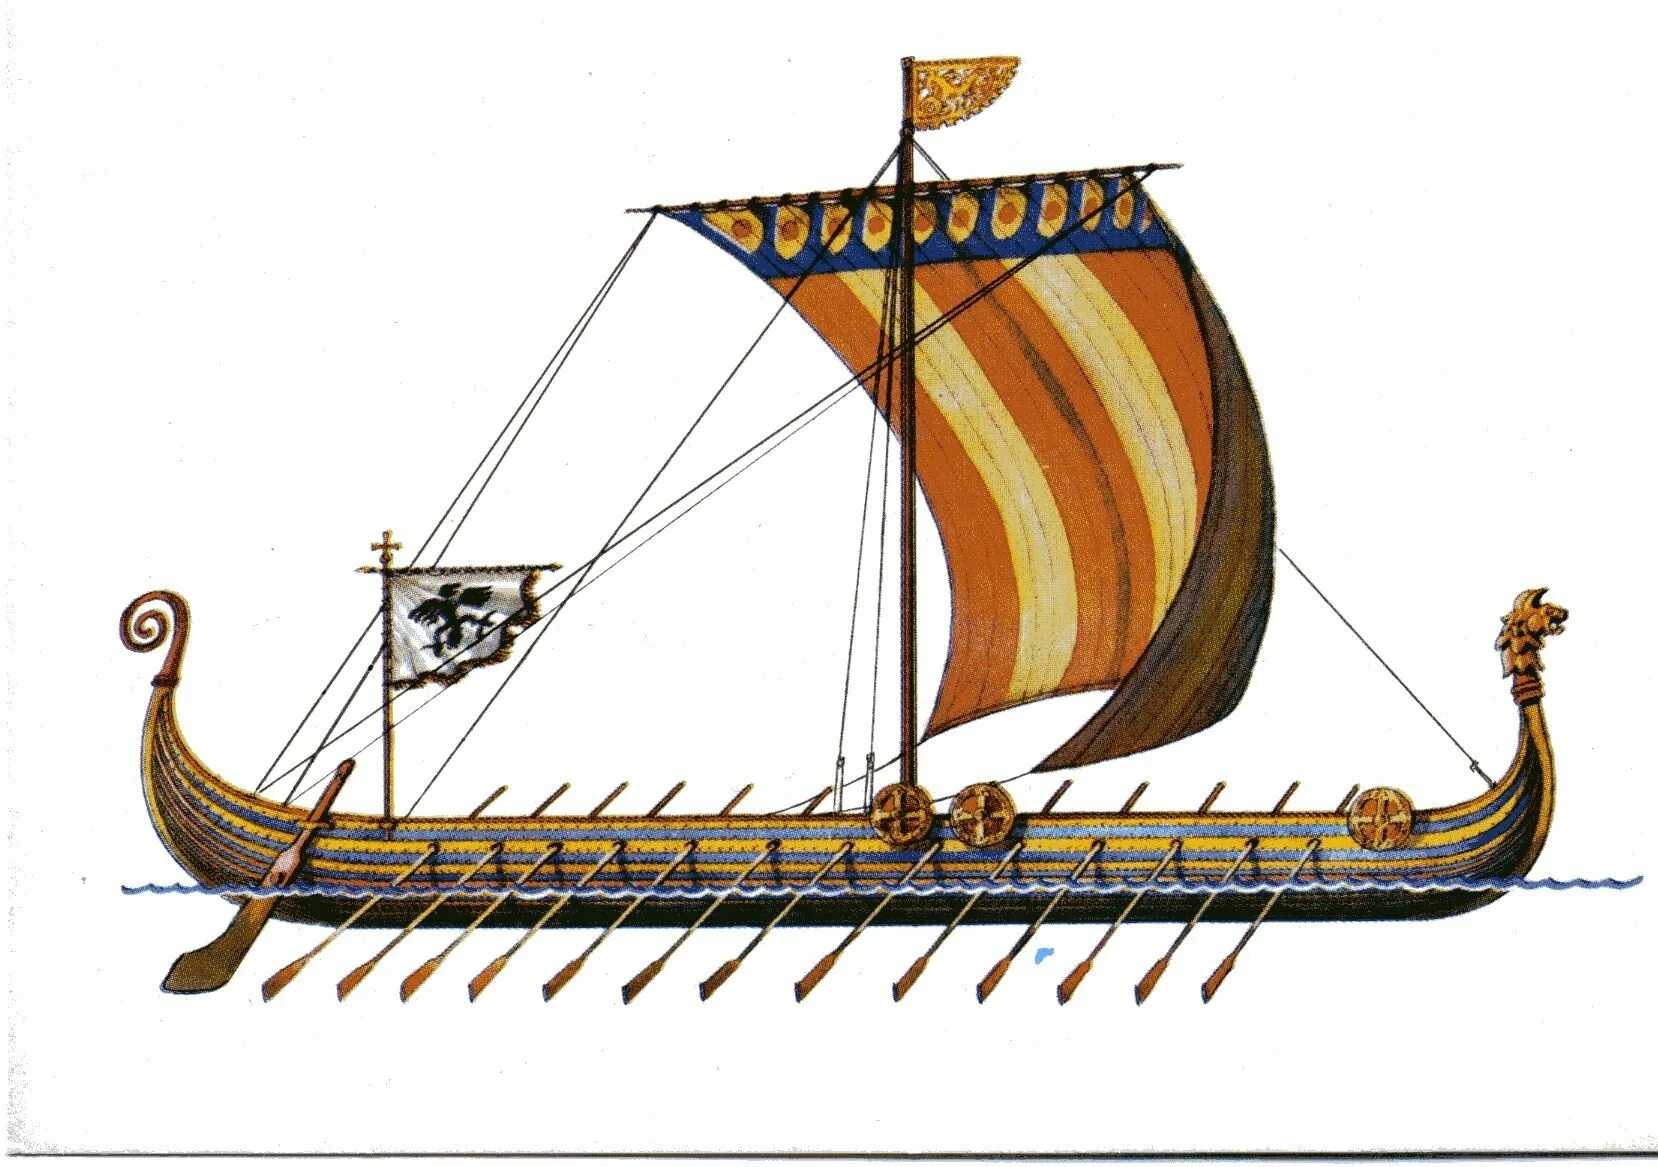 Корабль викингов Drakkar. Ладья викингов дракар. Корабль викингов Драккар 10 век. Корабли Вильгельма завоевателя. Описание ладьи